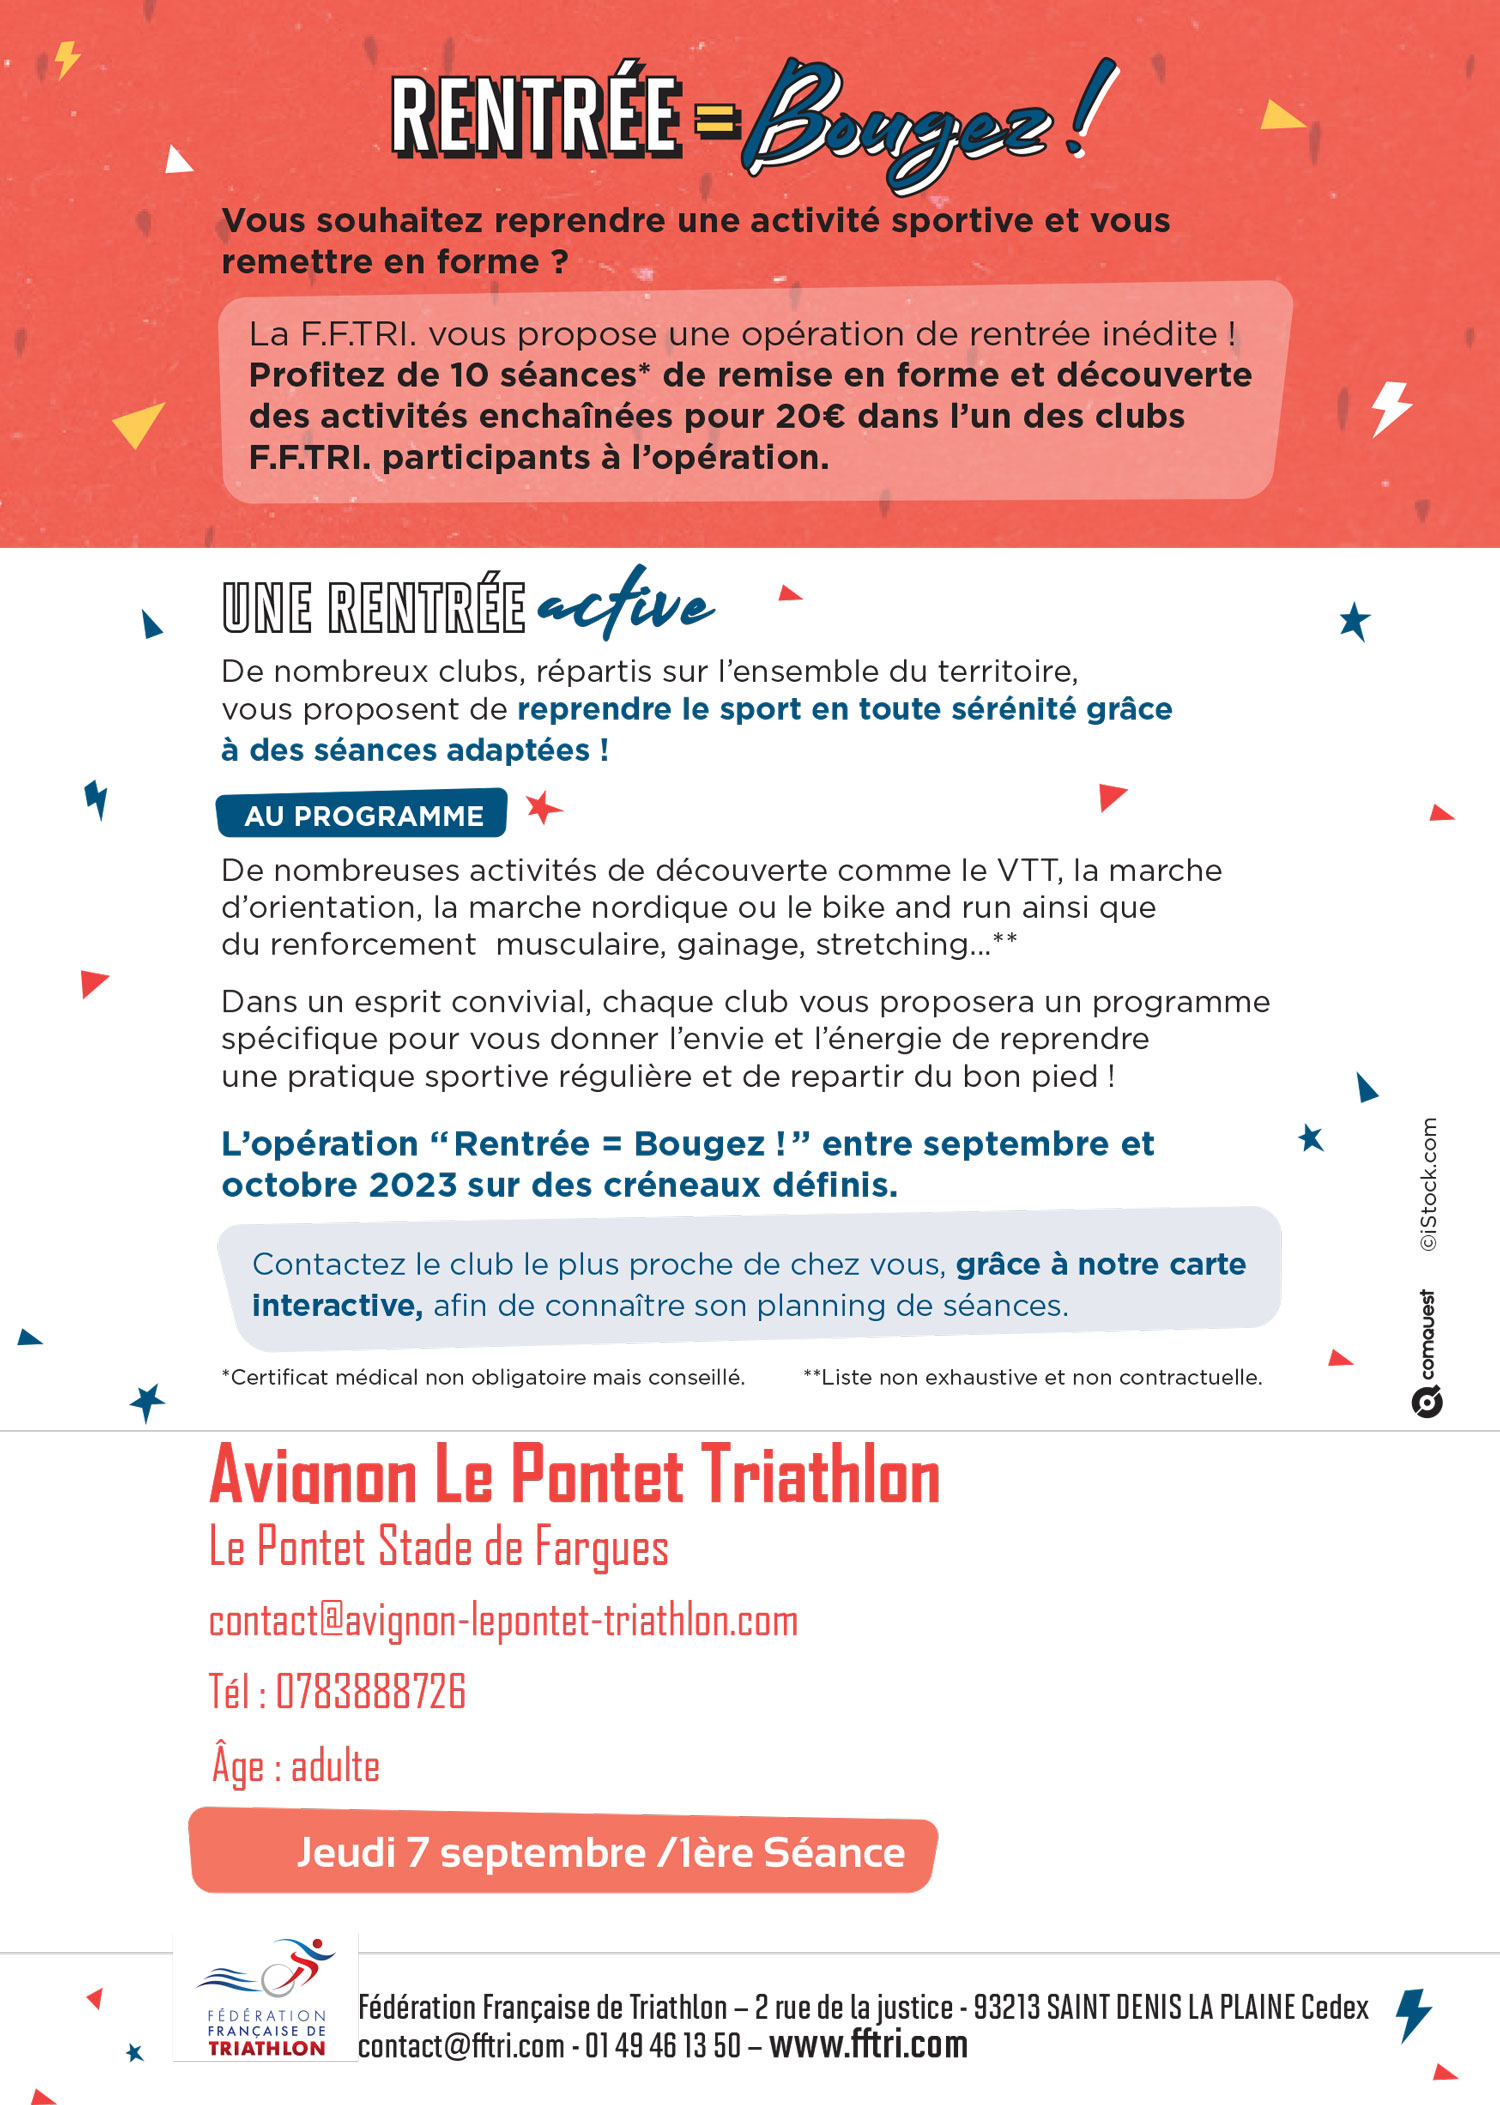 Avignon - Le Pontet Triathlon